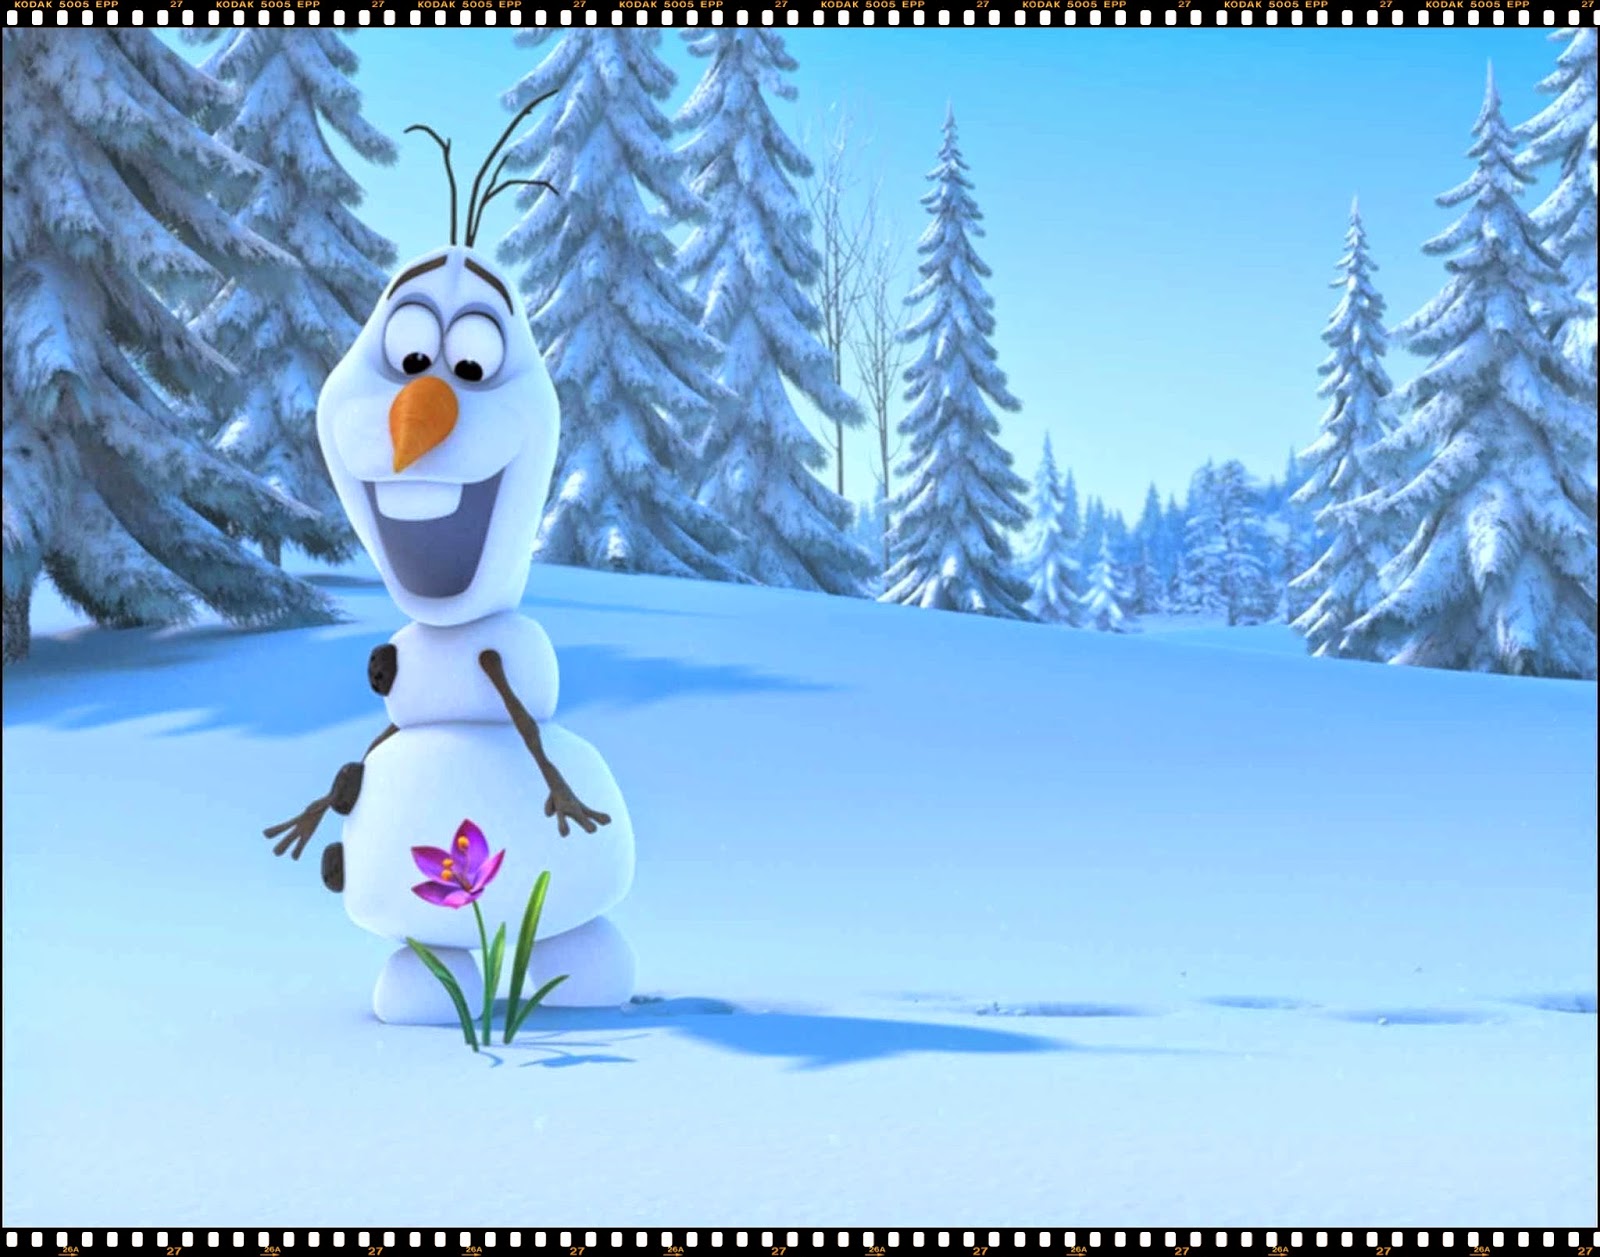 wallpaper kartun jepang,snowman,cartoon,animated cartoon,winter,snow